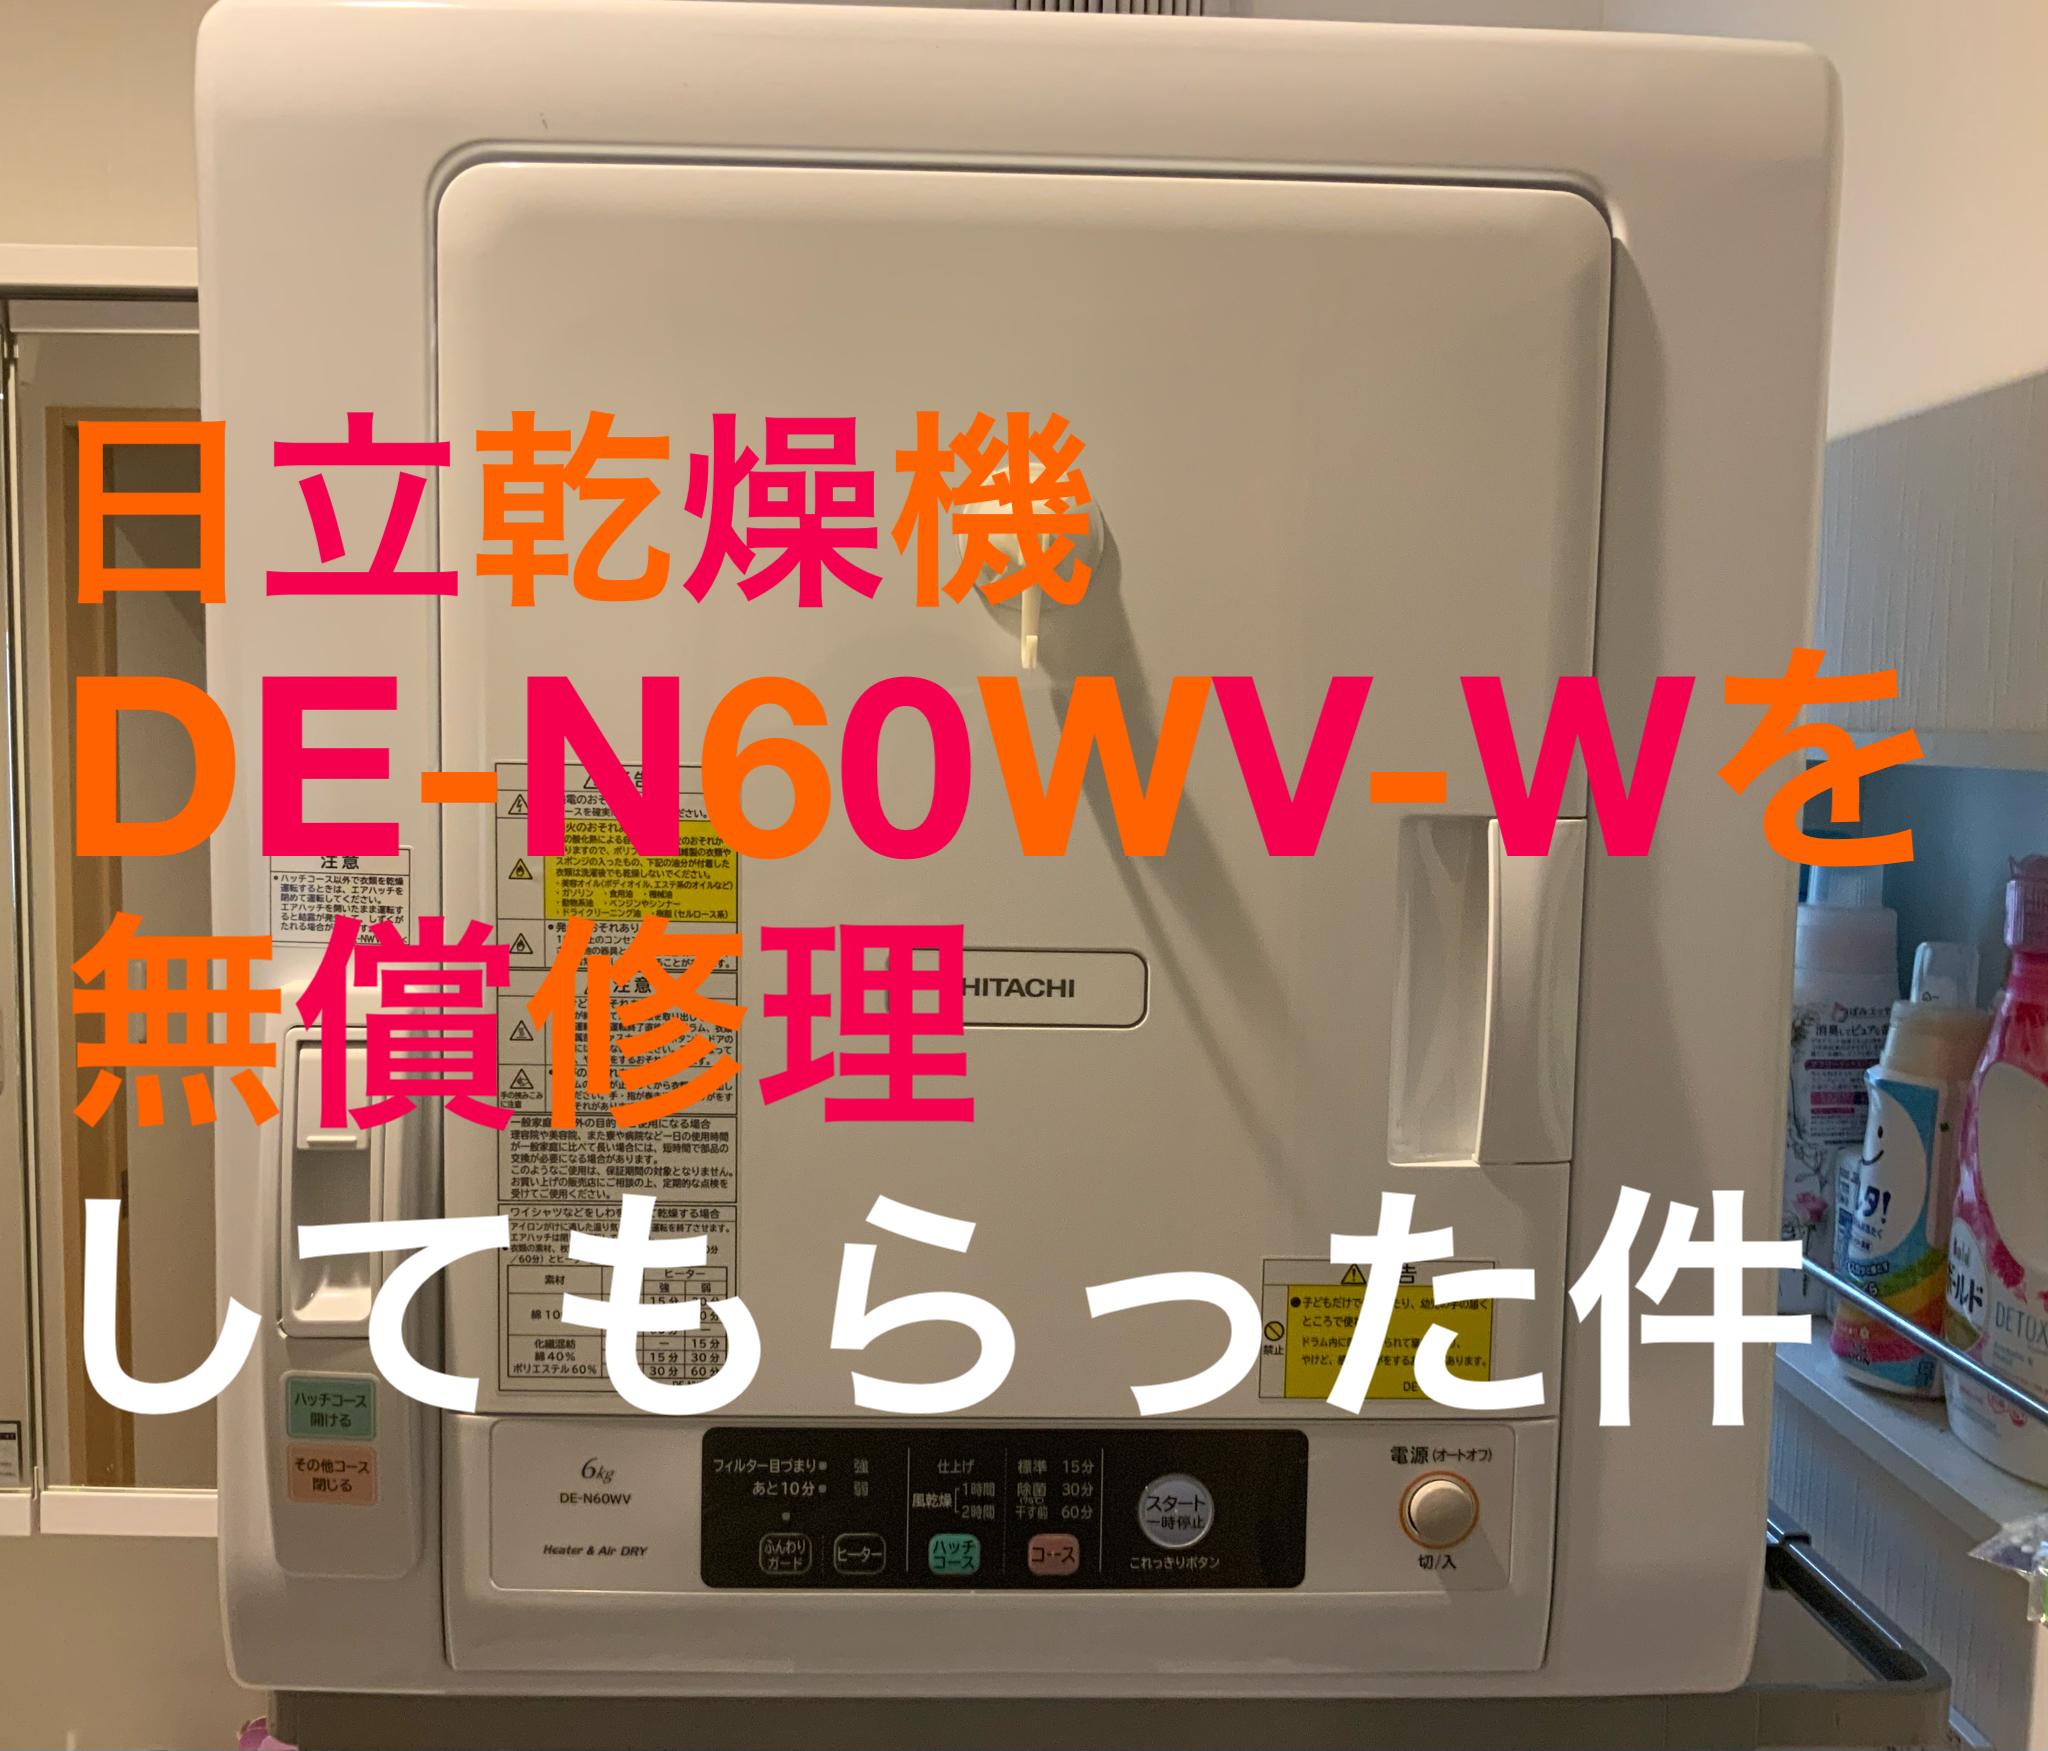 日立乾燥機 DE-N60WV-Wを無償で修理してもらった件 | ド真ん中社会人ブログ